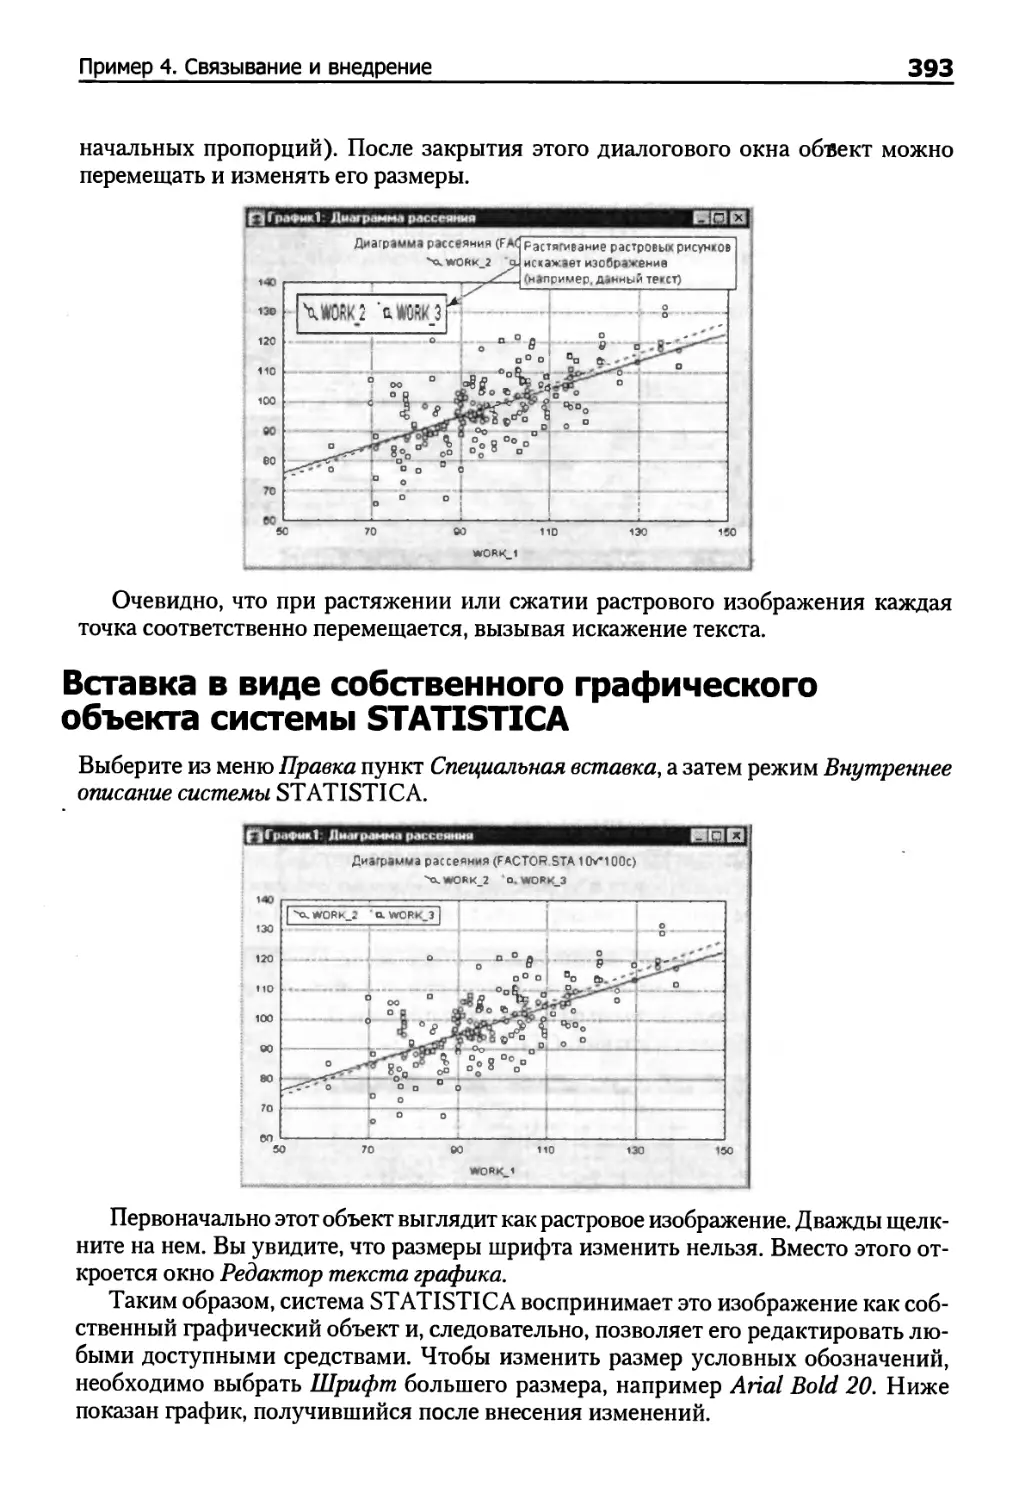 Вставка в виде собственного графического объекта системы STATISTICA